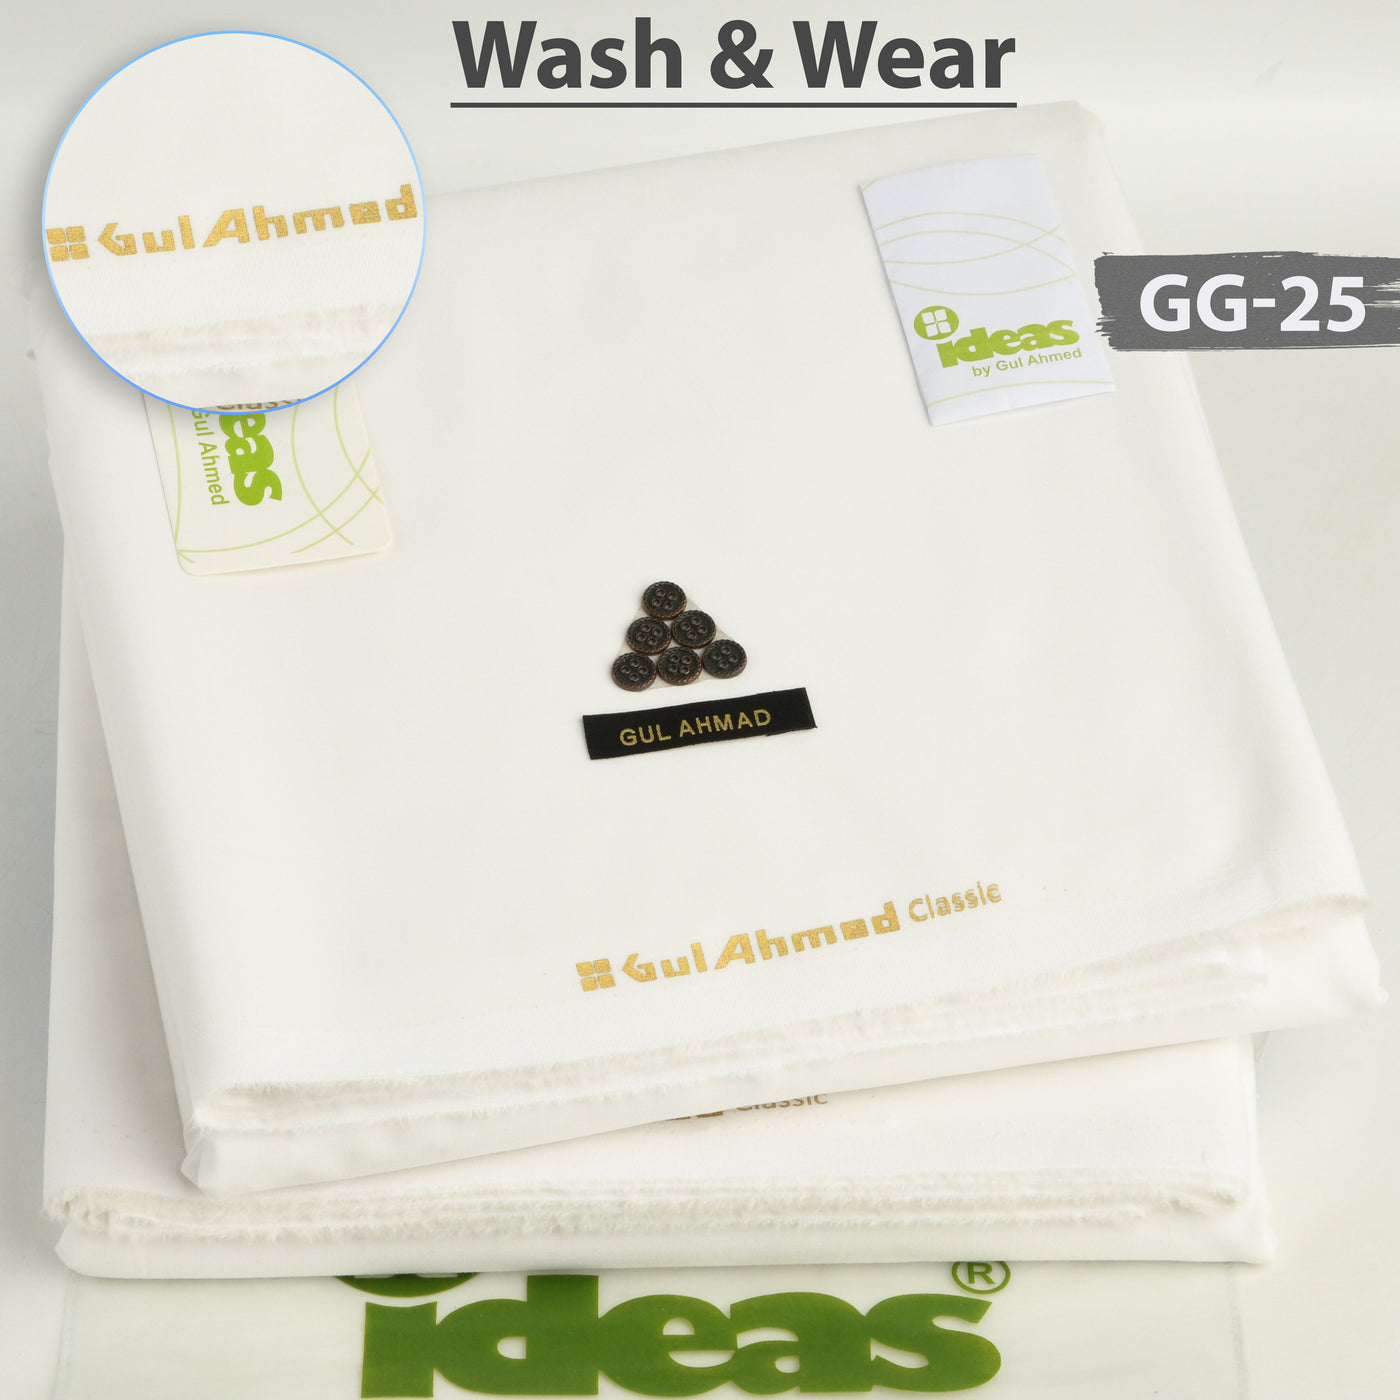 Gul Ahmed Wash N Wear GG-25